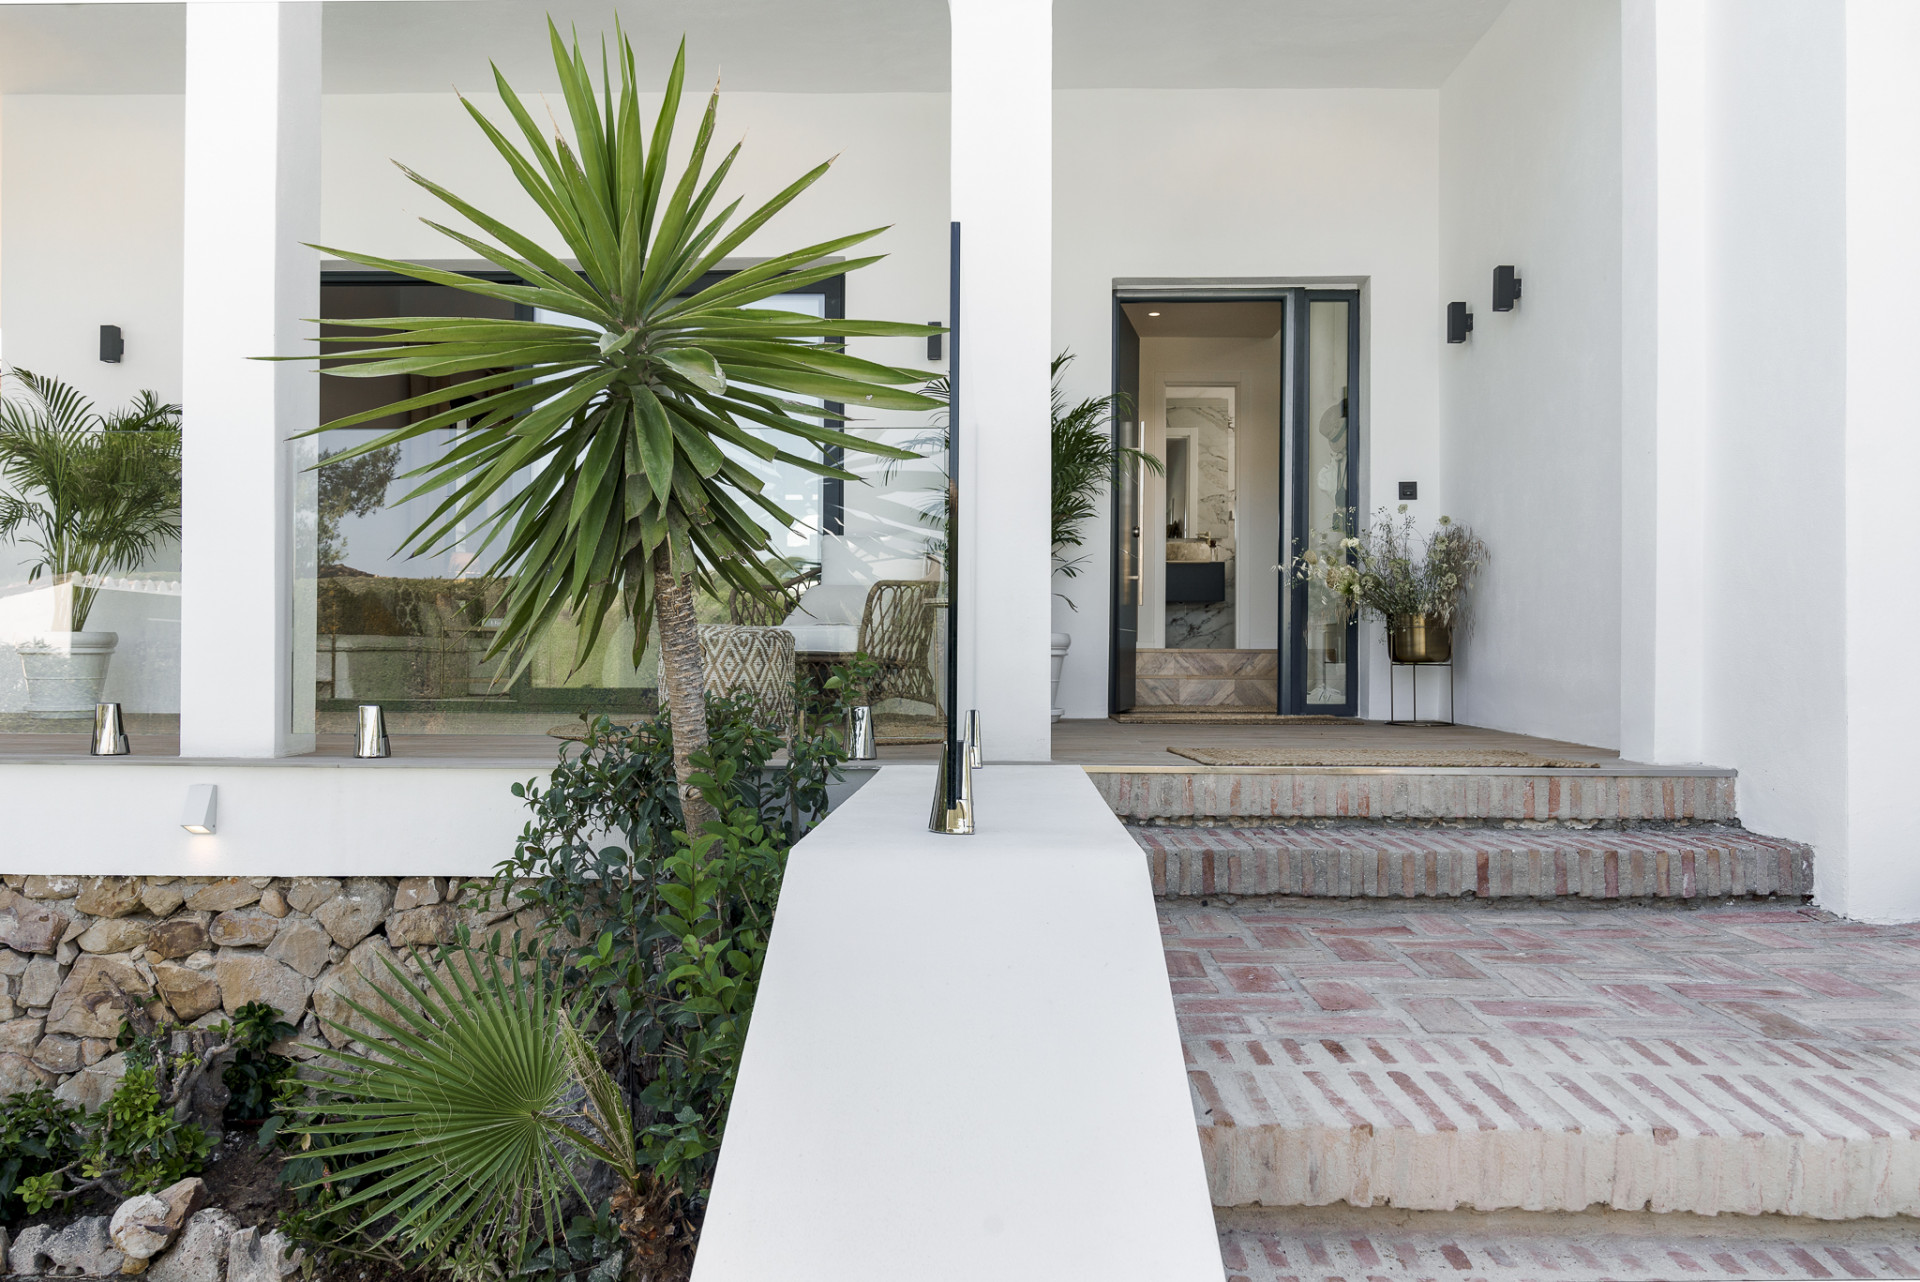 Villa Hibisco, villa contemporánea situada en una comunidad privada y segura de Nueva Andalucía.